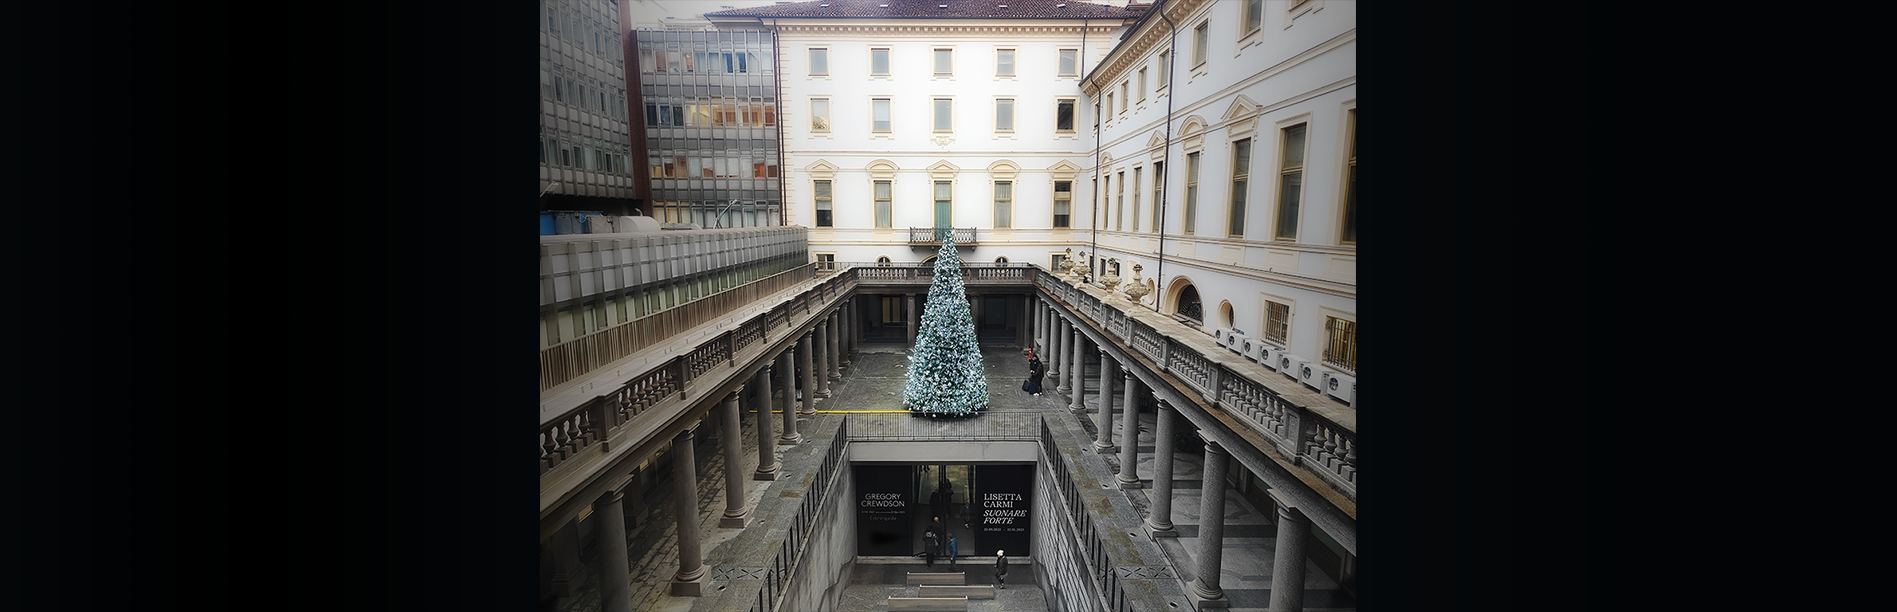 Gallerie d'Italia Torino, ingresso